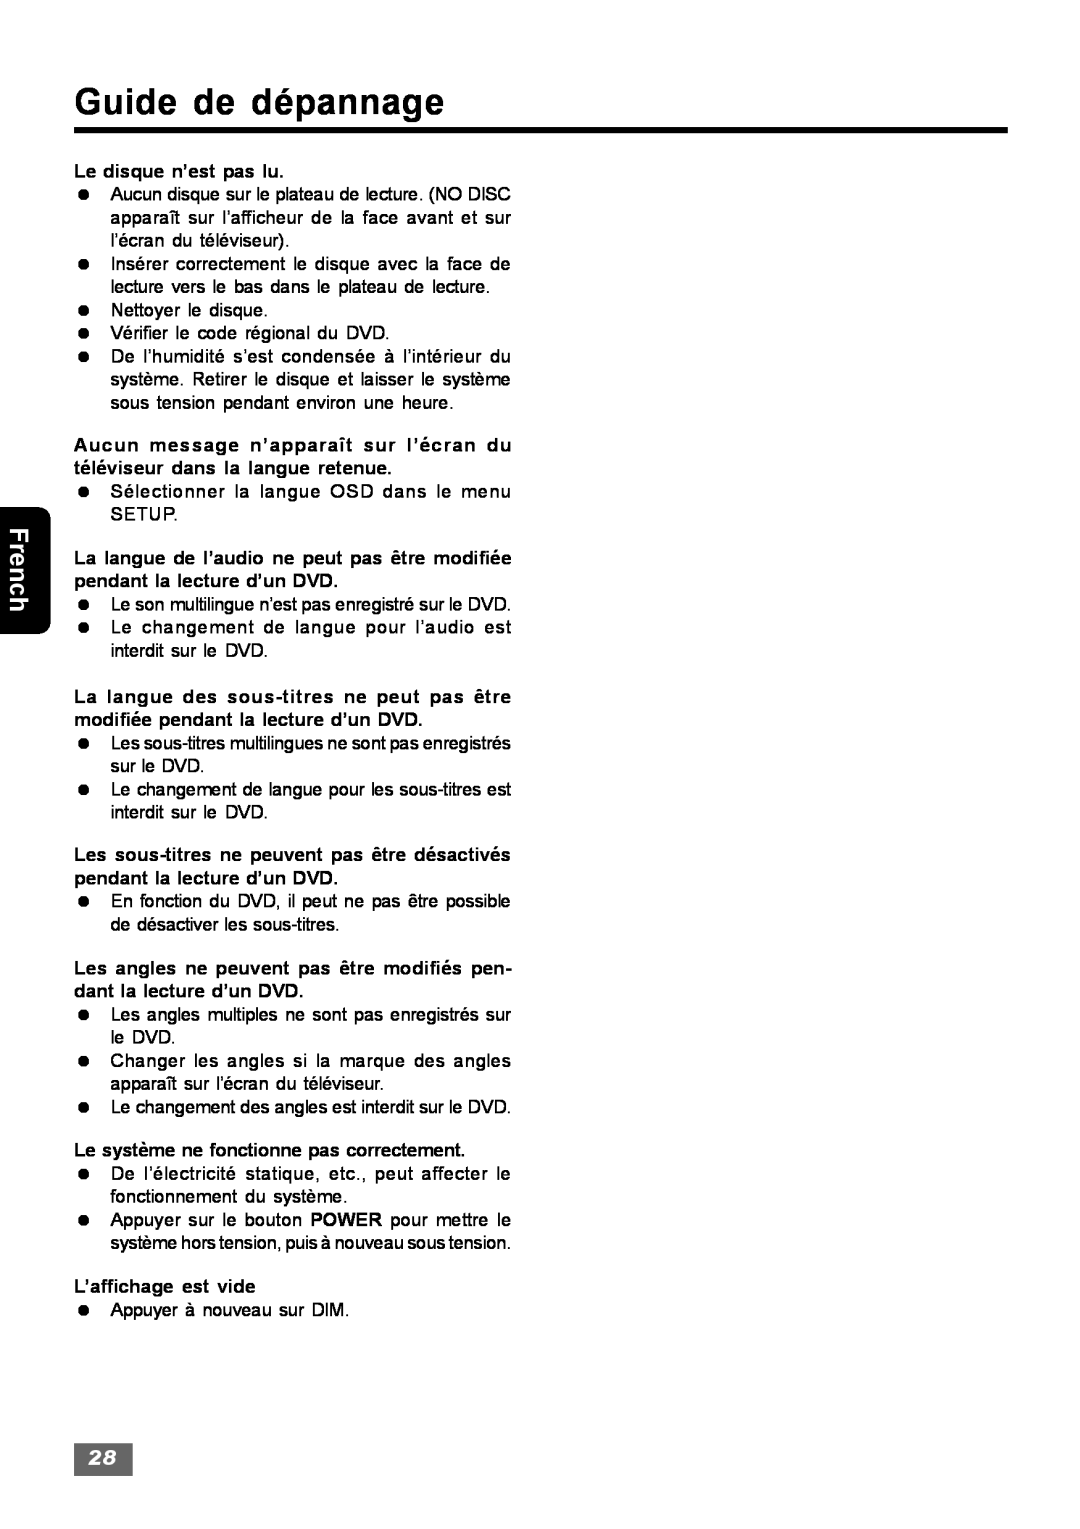 Insignia IS-HTIB102731 owner manual Guide de dépannage, French, Le disque n’est pas lu 